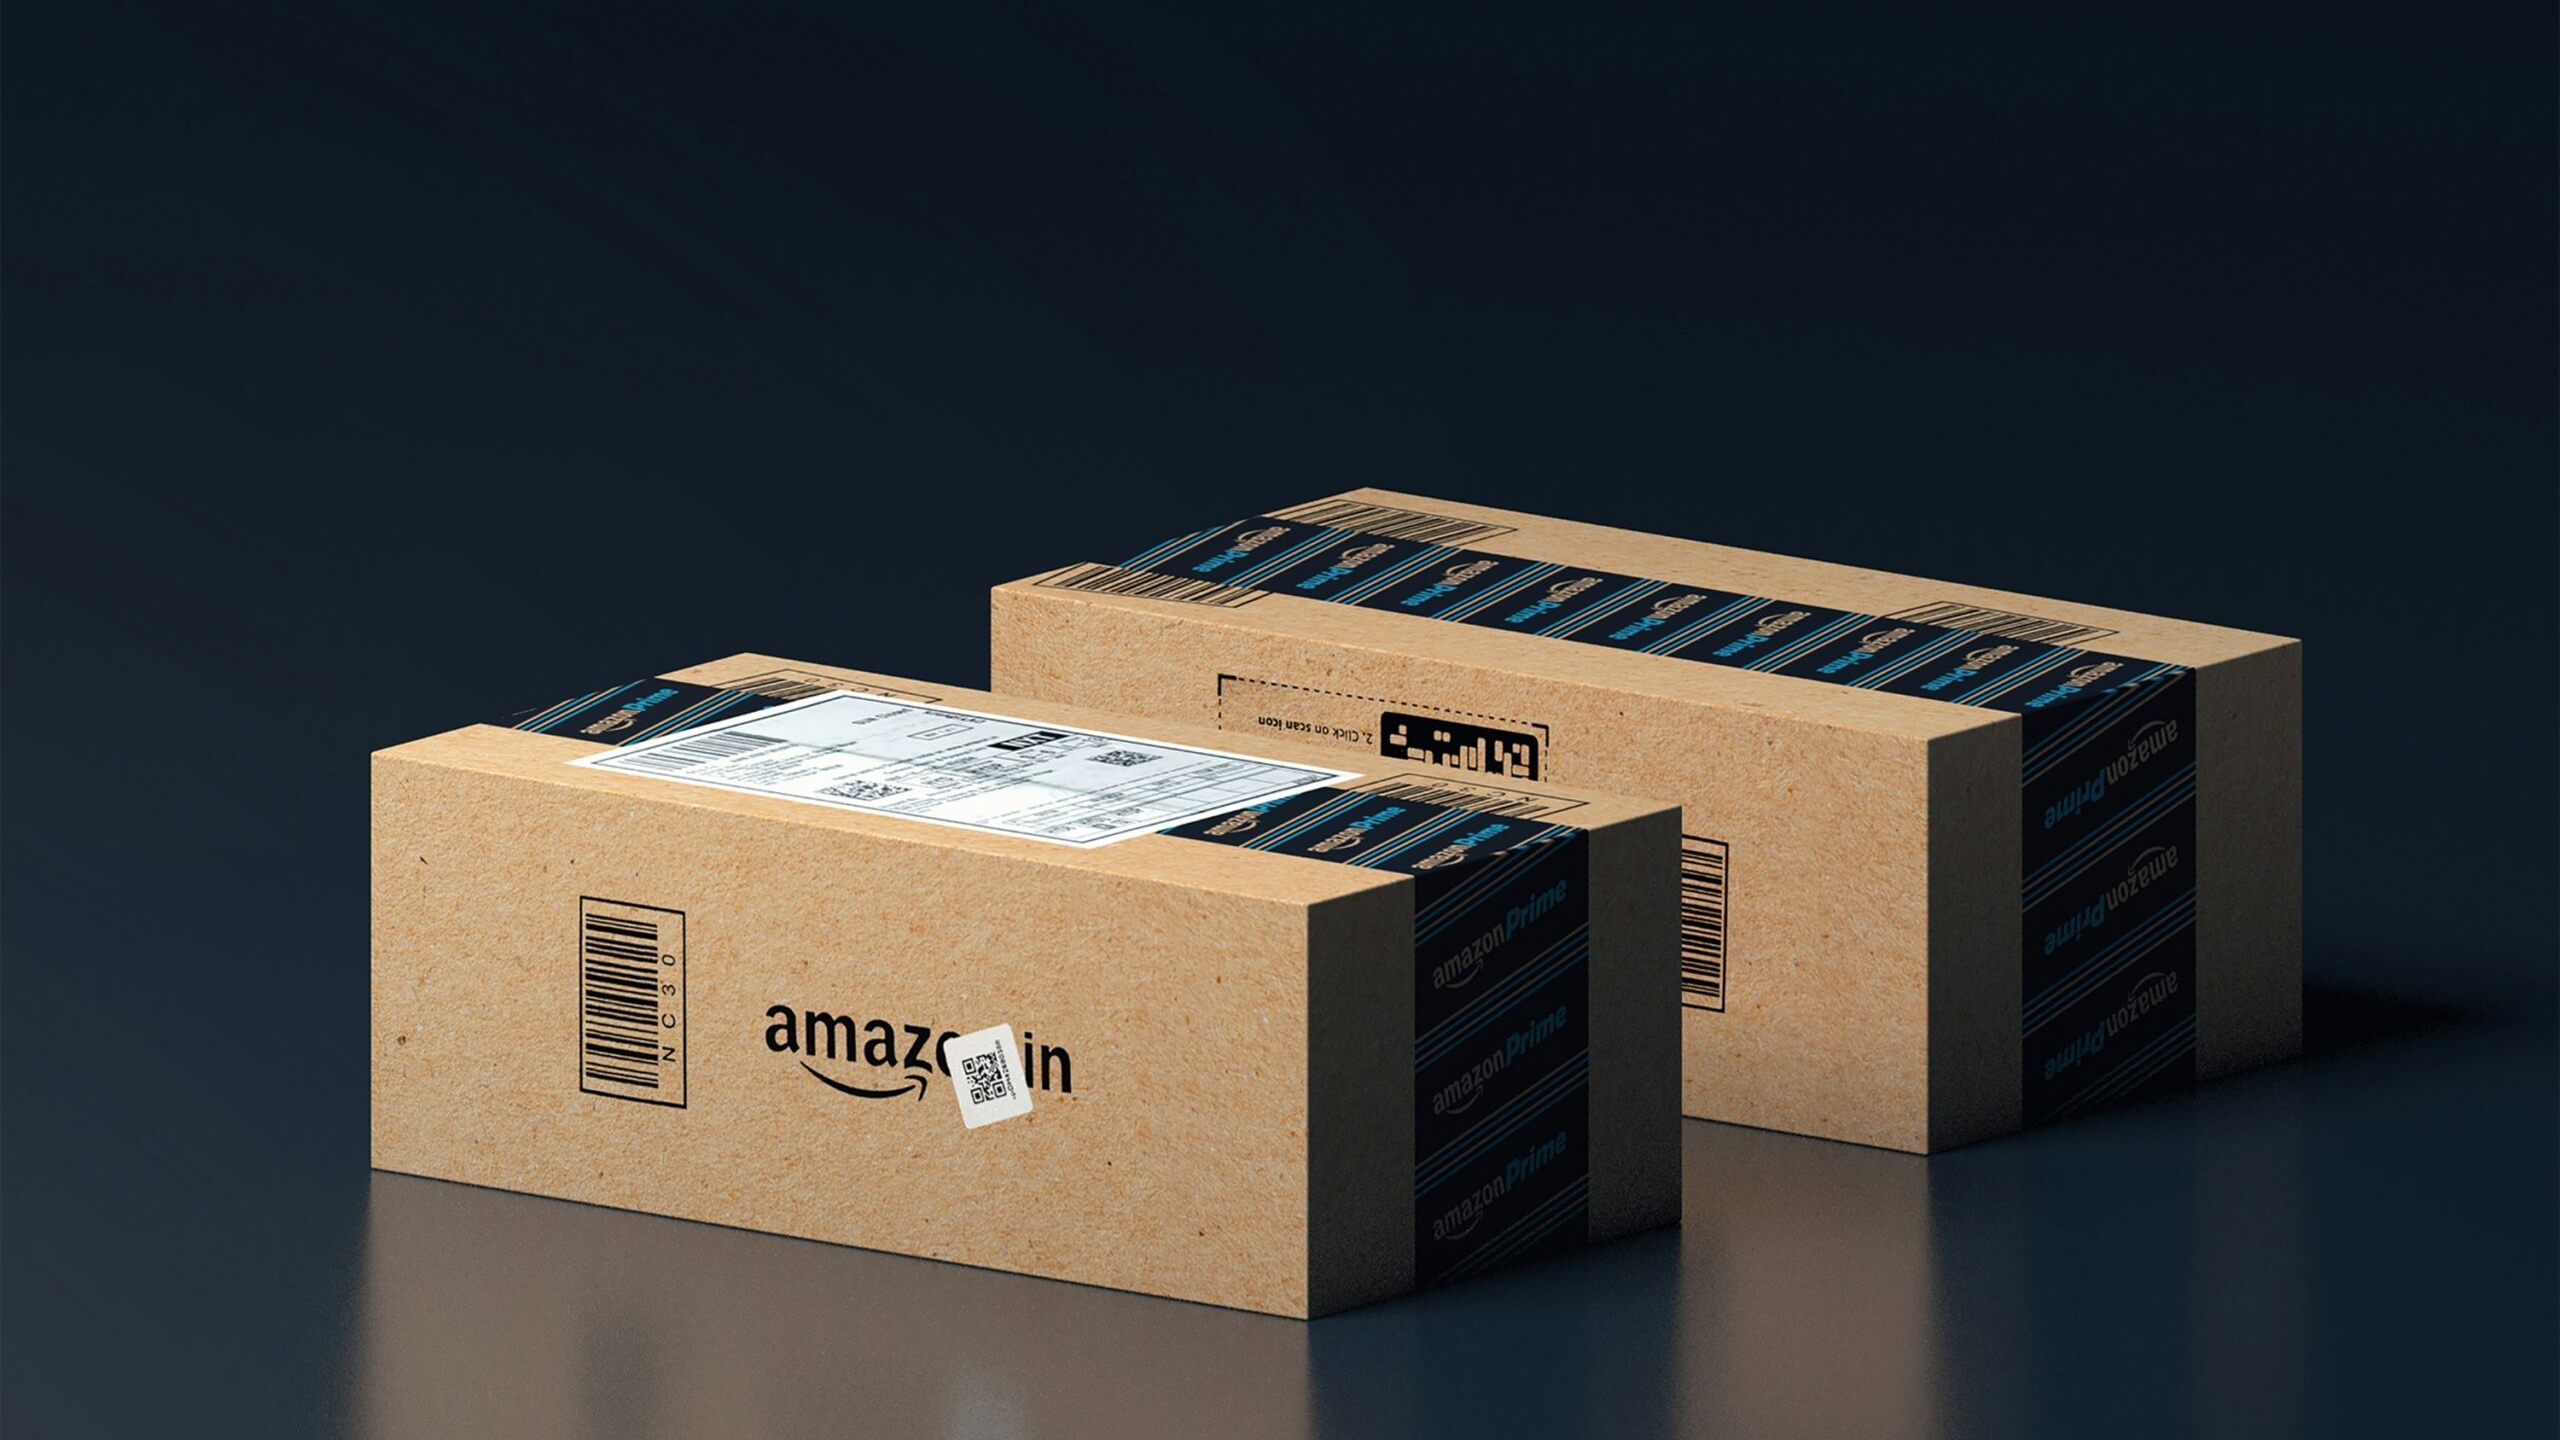 В США коробка с товарами от маркетплейса Amazon была под чутким надзором кошки